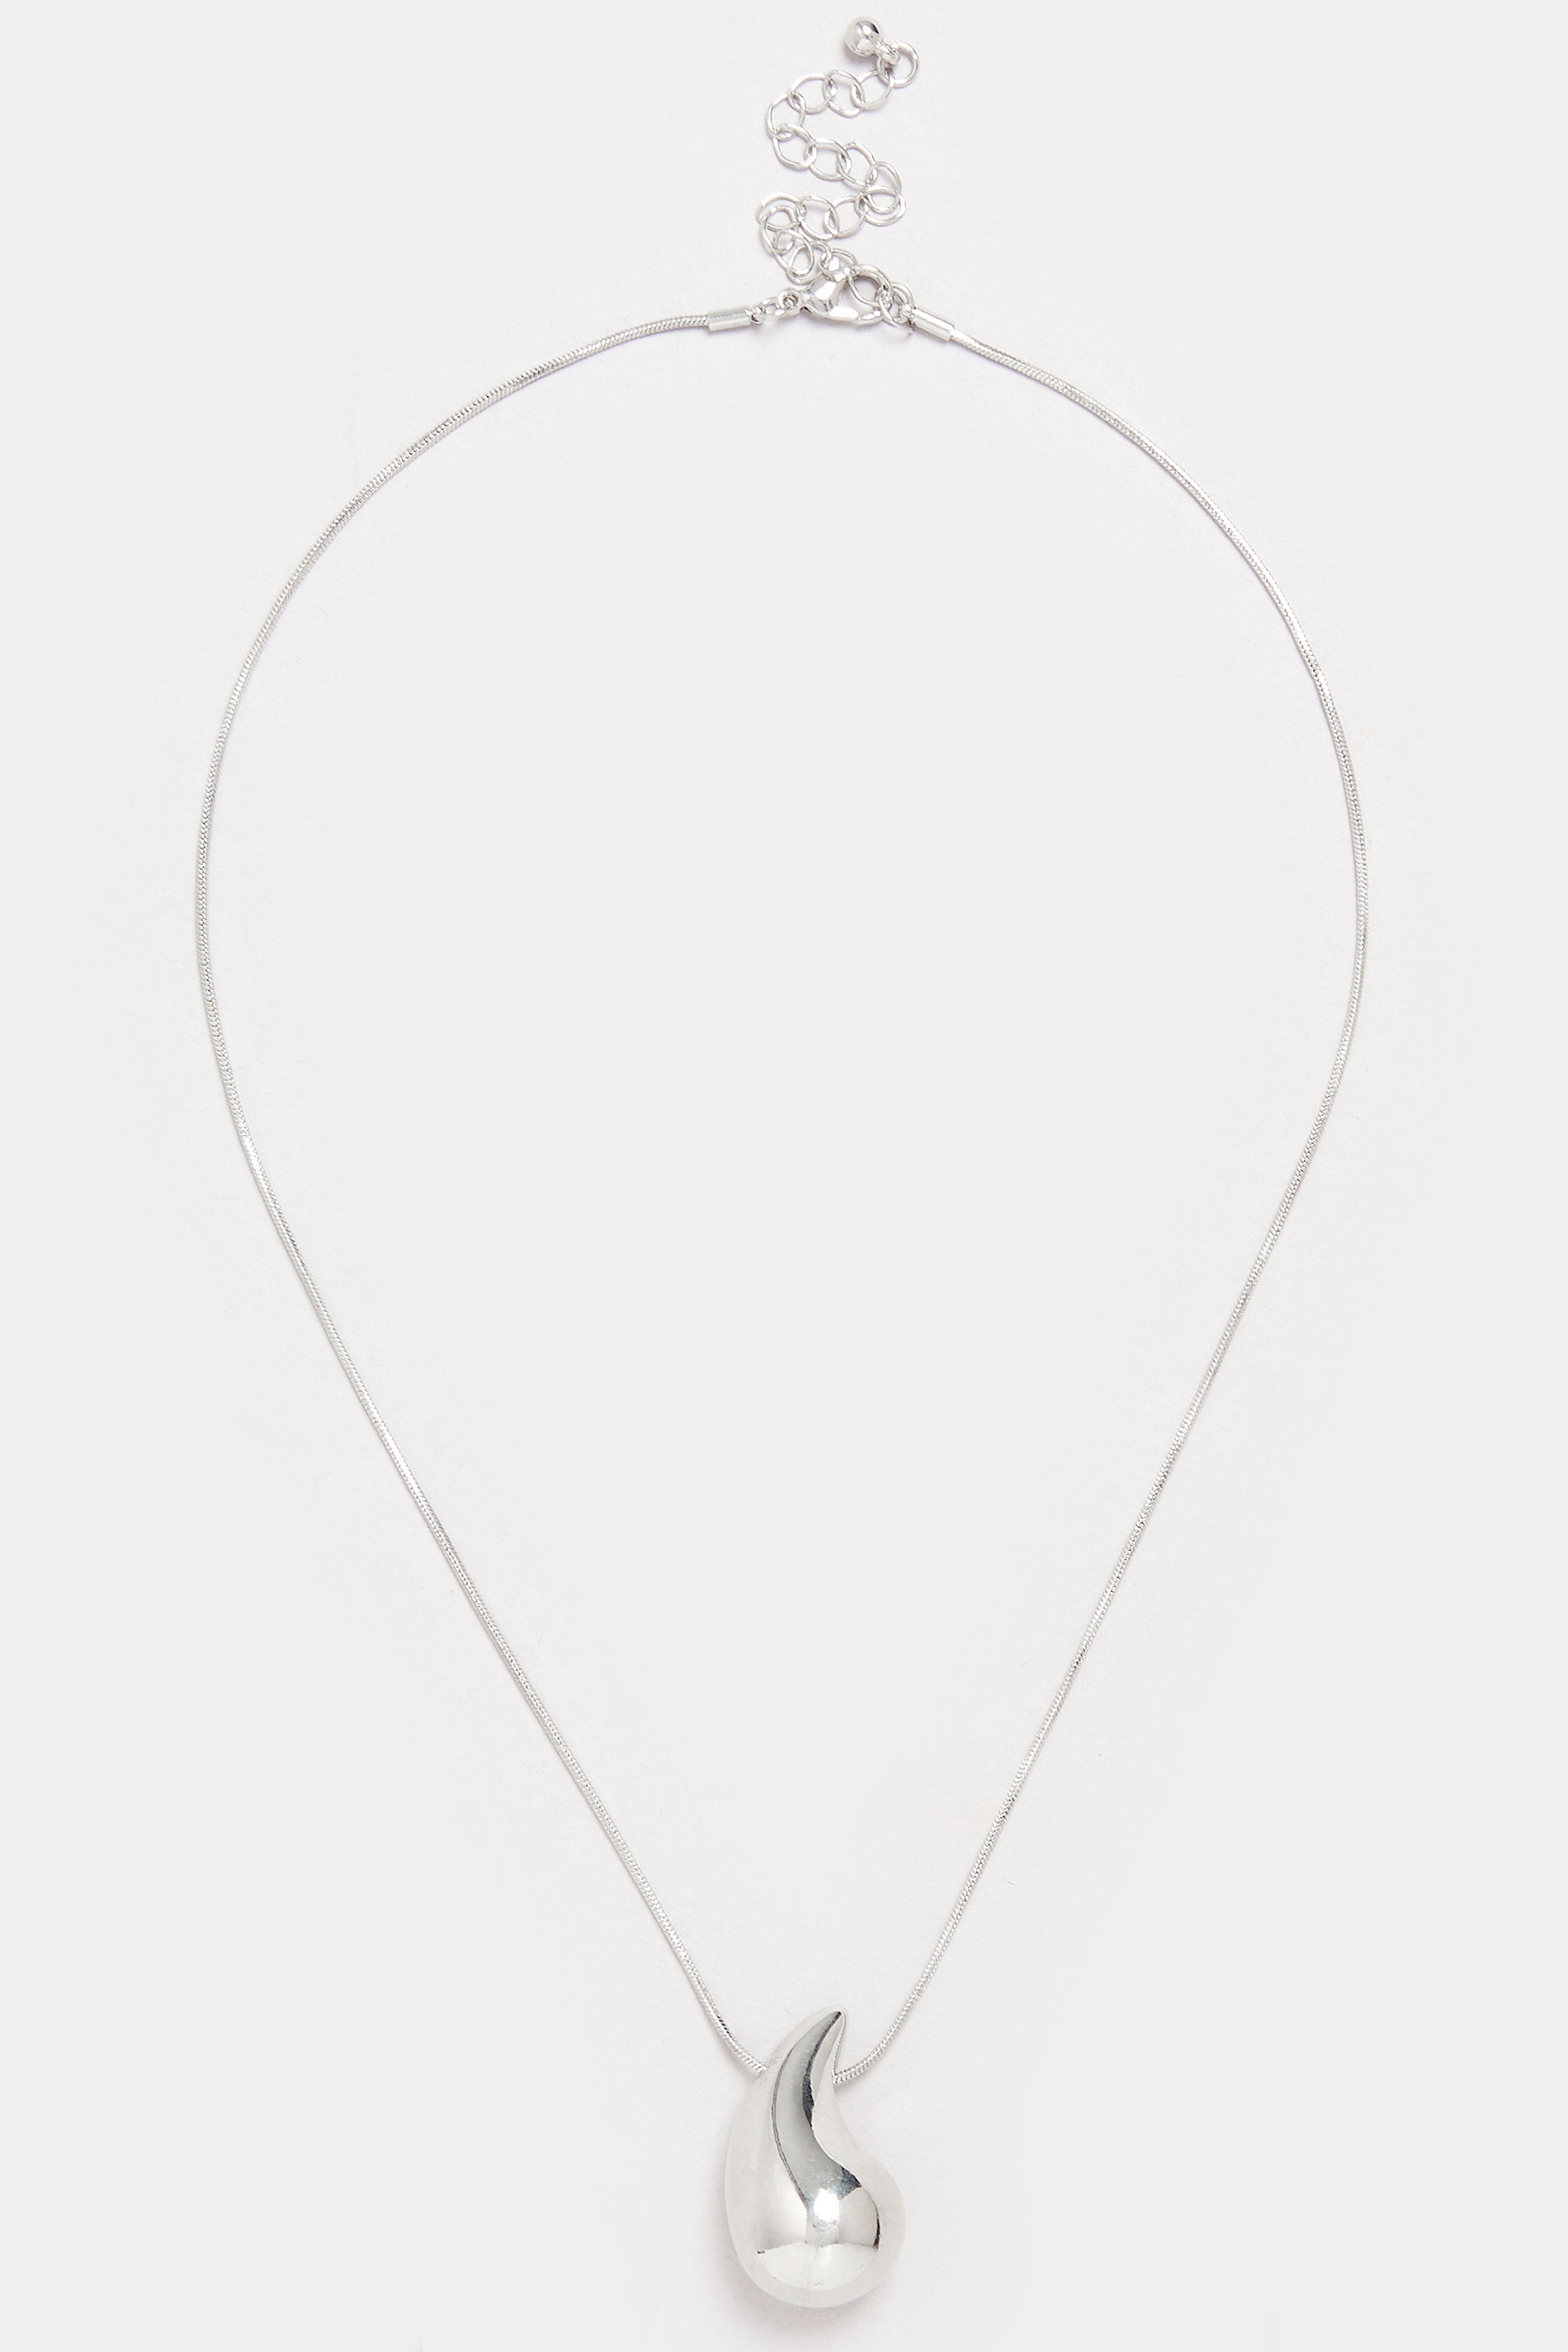 Silver Tone Teardrop Pendant Necklace  2